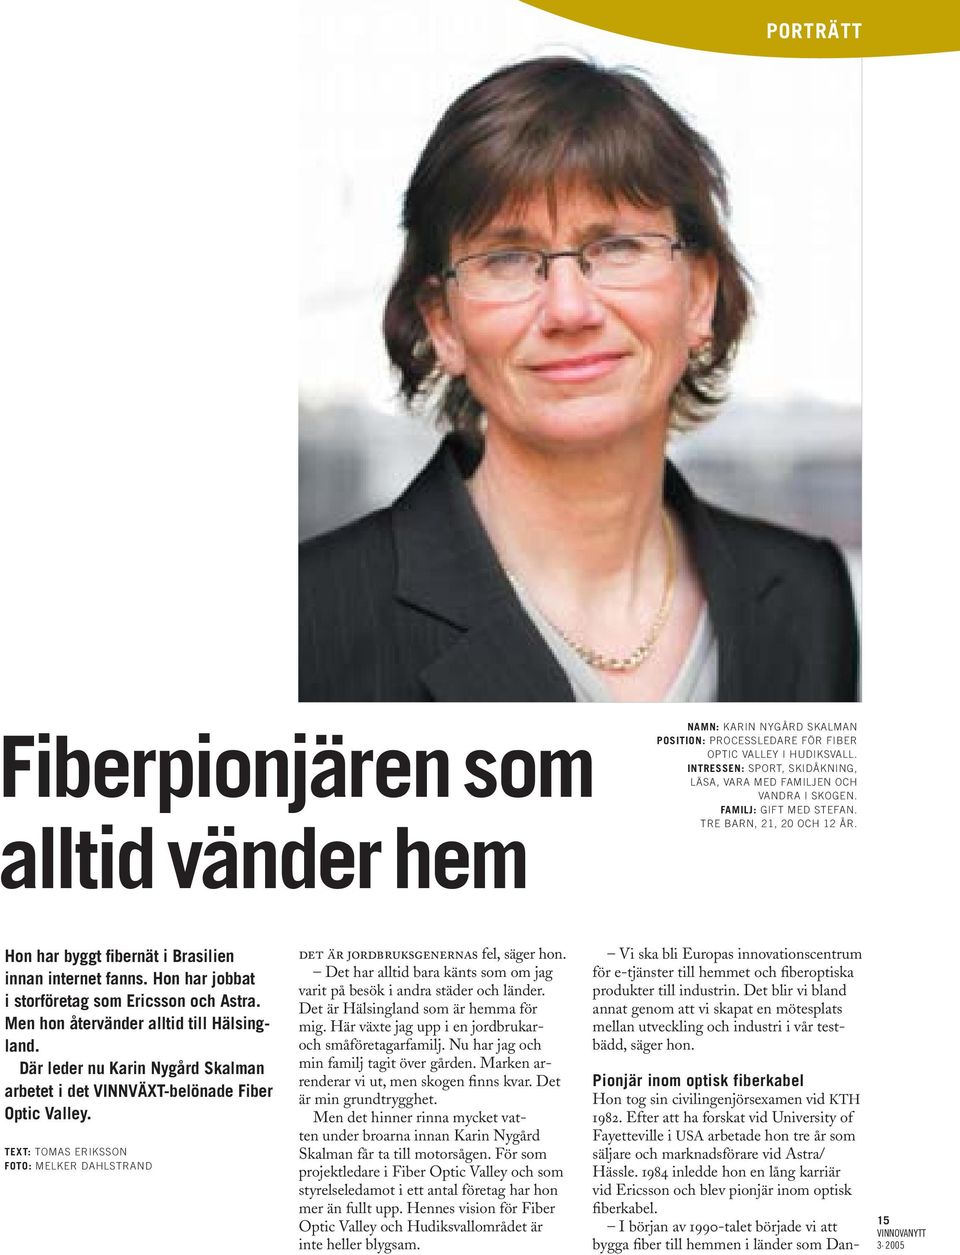 Hon har jobbat i storföretag som Ericsson och Astra. Men hon återvänder alltid till Hälsingland. Där leder nu Karin Nygård Skalman arbetet i det VINNVÄXT-belönade Fiber Optic Valley.